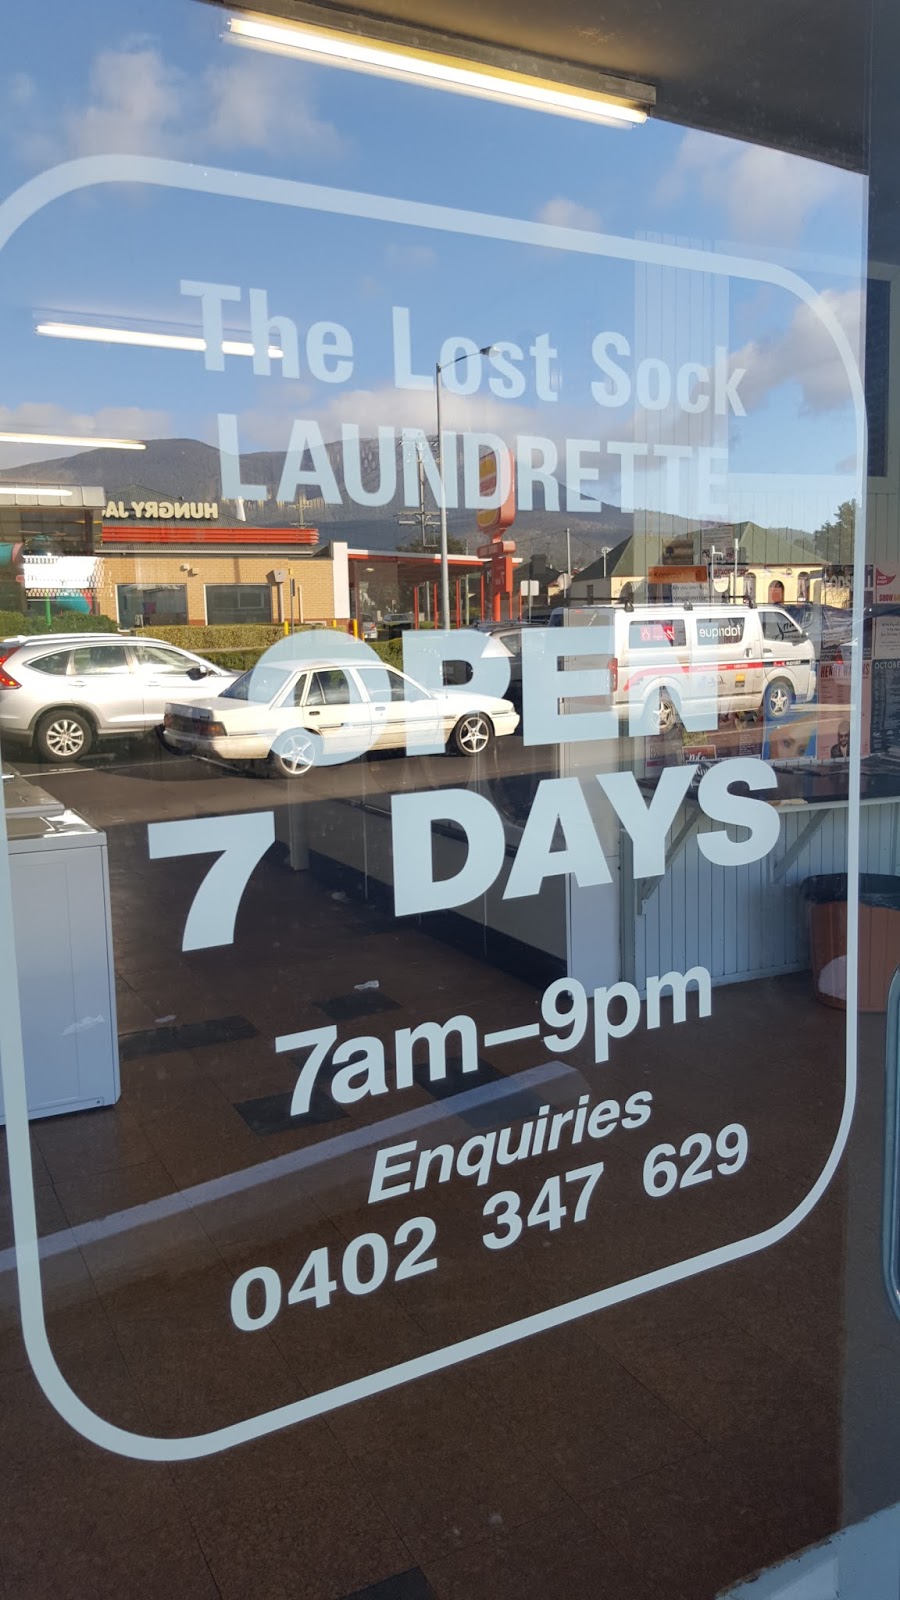 The Lost Sock Laundrette | 445 Main Rd, Glenorchy TAS 7010, Australia | Phone: 0402 347 629